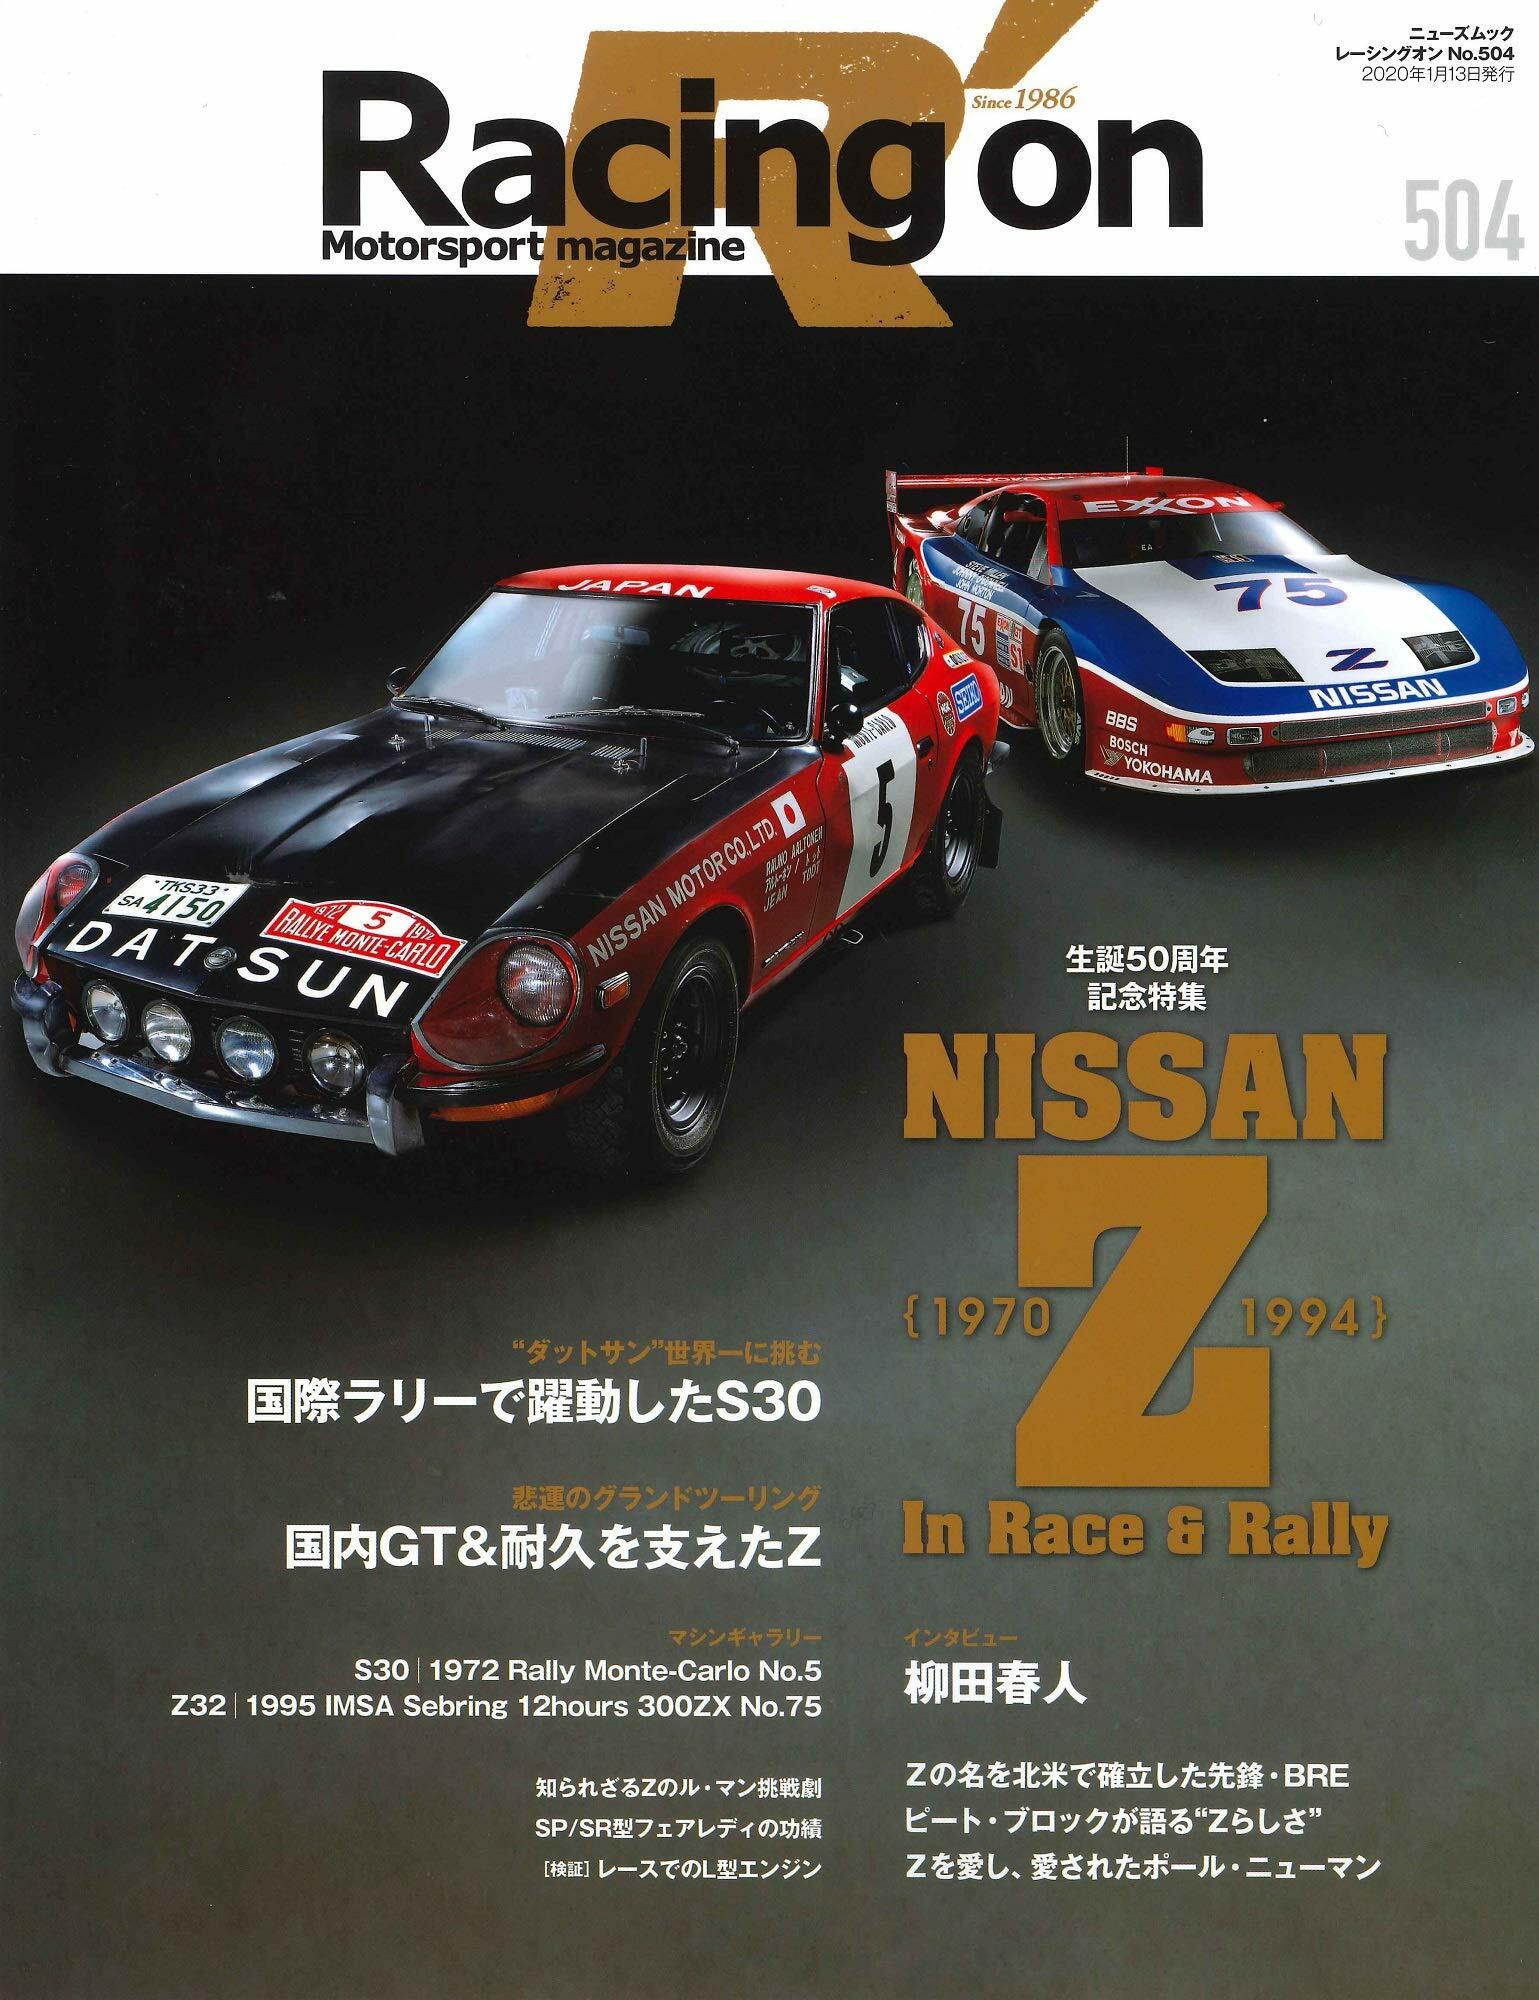 レ-シングオン No. 504 NISSAN Z In Race & Rally ｛ 1970 - 1994 ｝